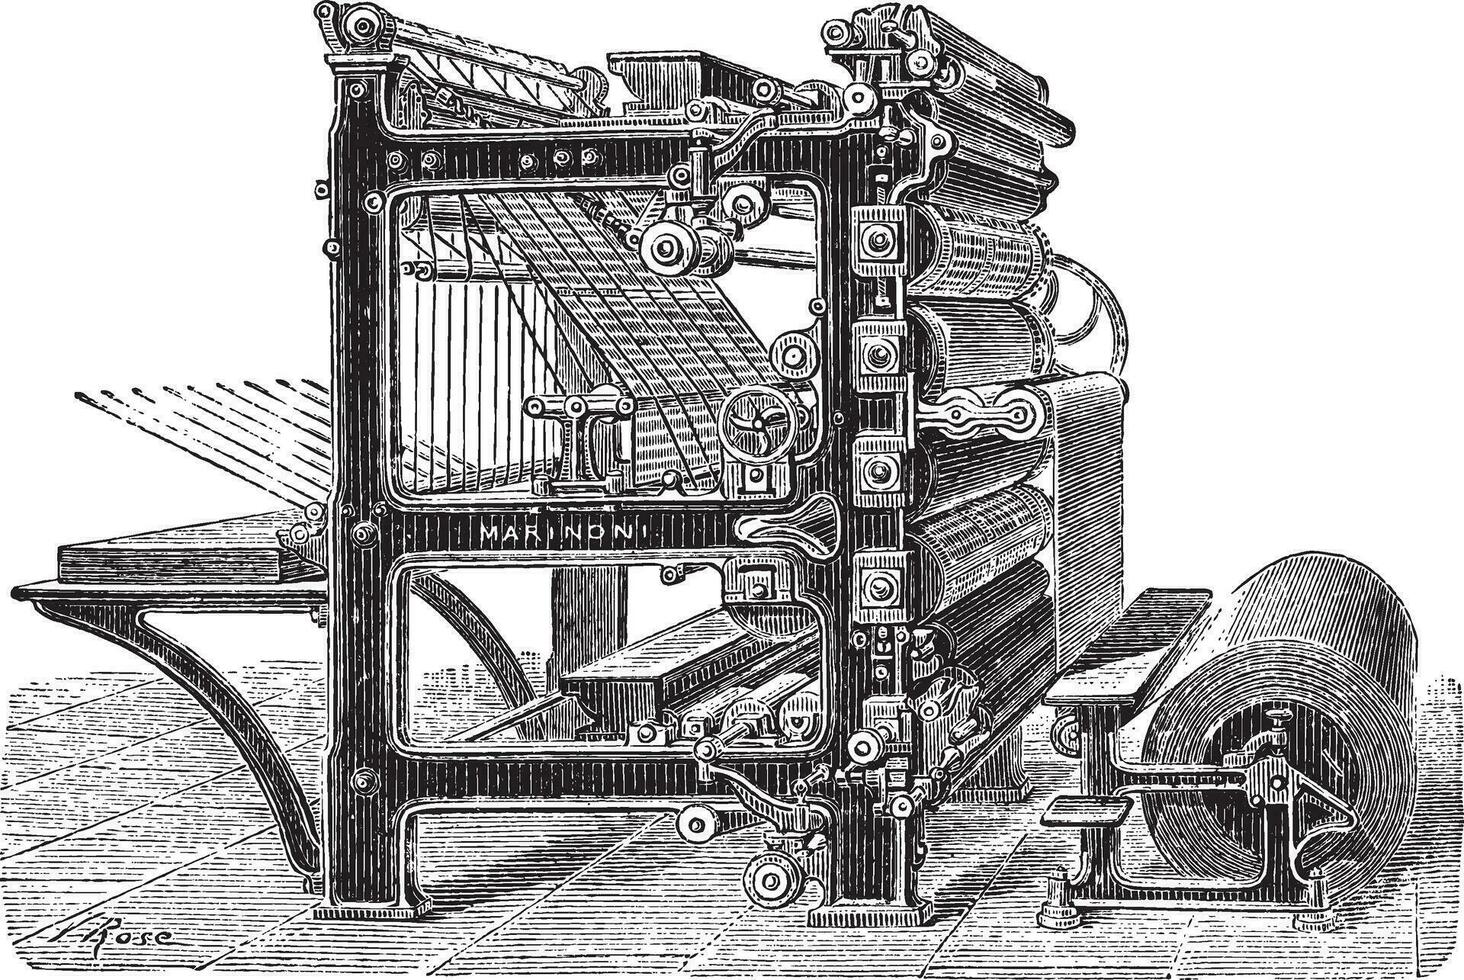 Marinoni Rotary printing press vintage engraving vector